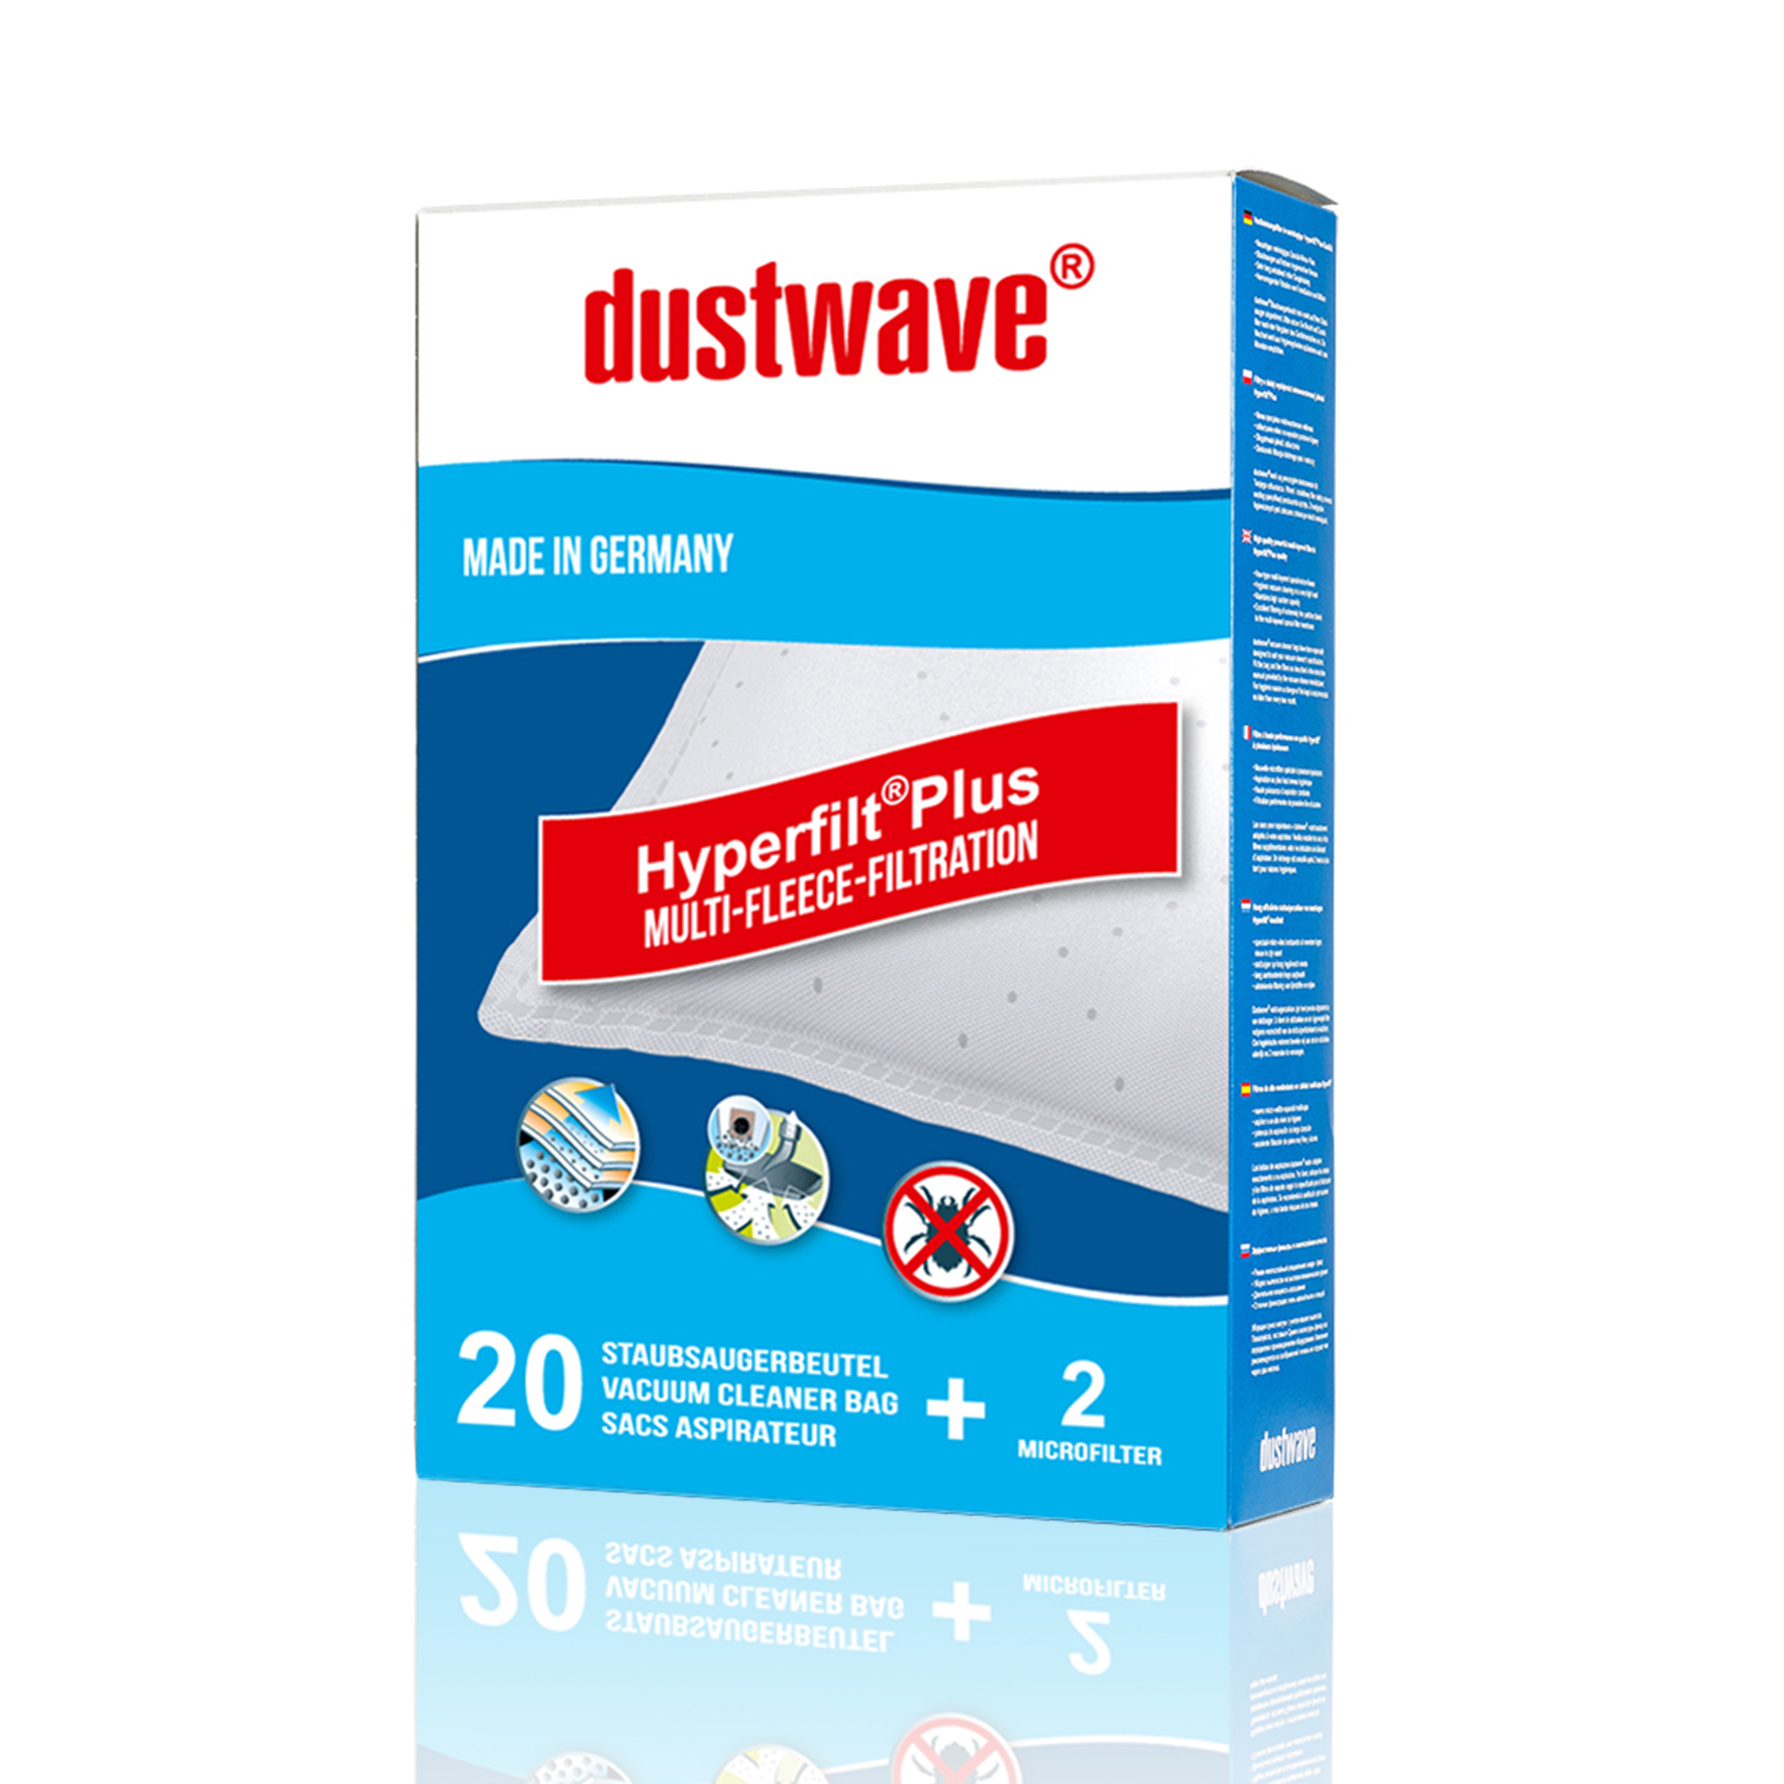 Dustwave® 1 Staubsaugerbeutel für SWIRL S 63 - hocheffizient, mehrlagiges Mikrovlies mit Hygieneverschluss - Made in Germany